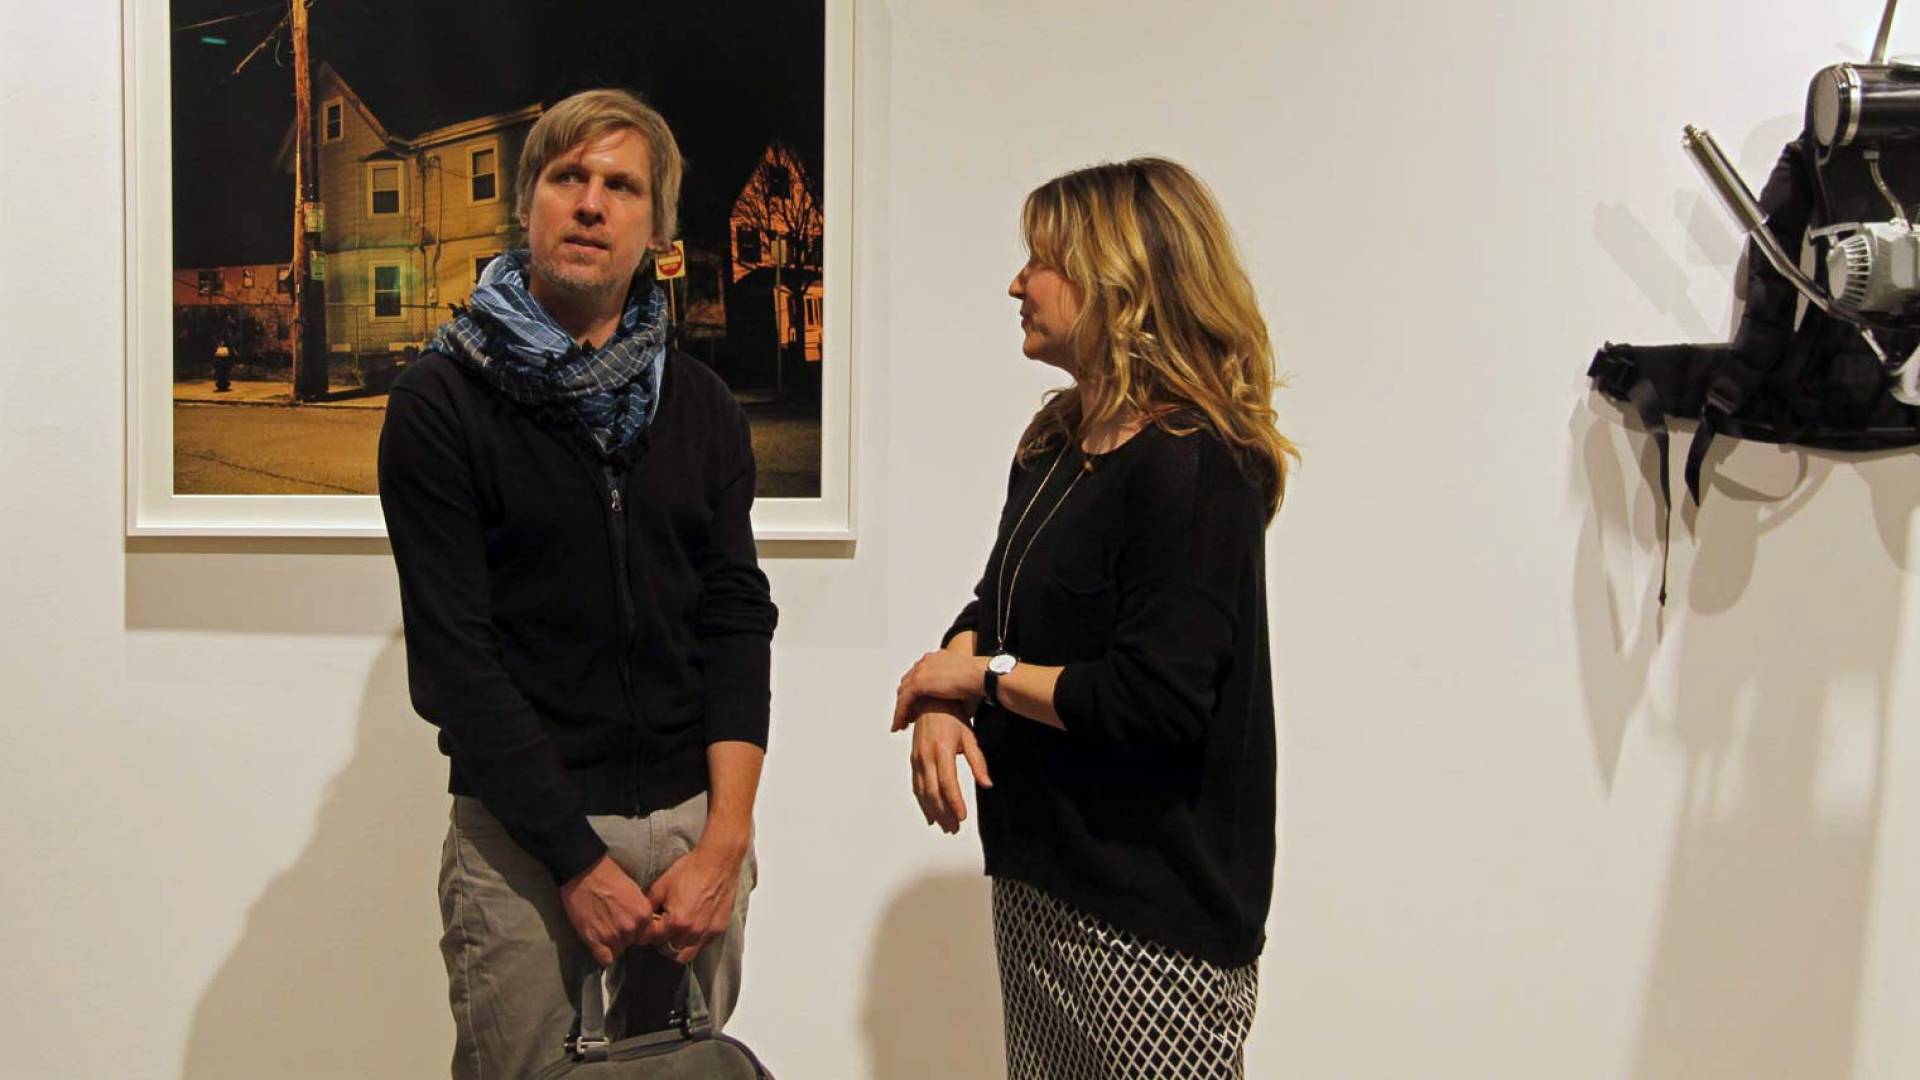 Markus Huber de huber.huber avec Nathalie Loch. Le duo d’artistes huber.huber est représenté avec plusieurs œuvres dans la collection d’art d’Helvetia.